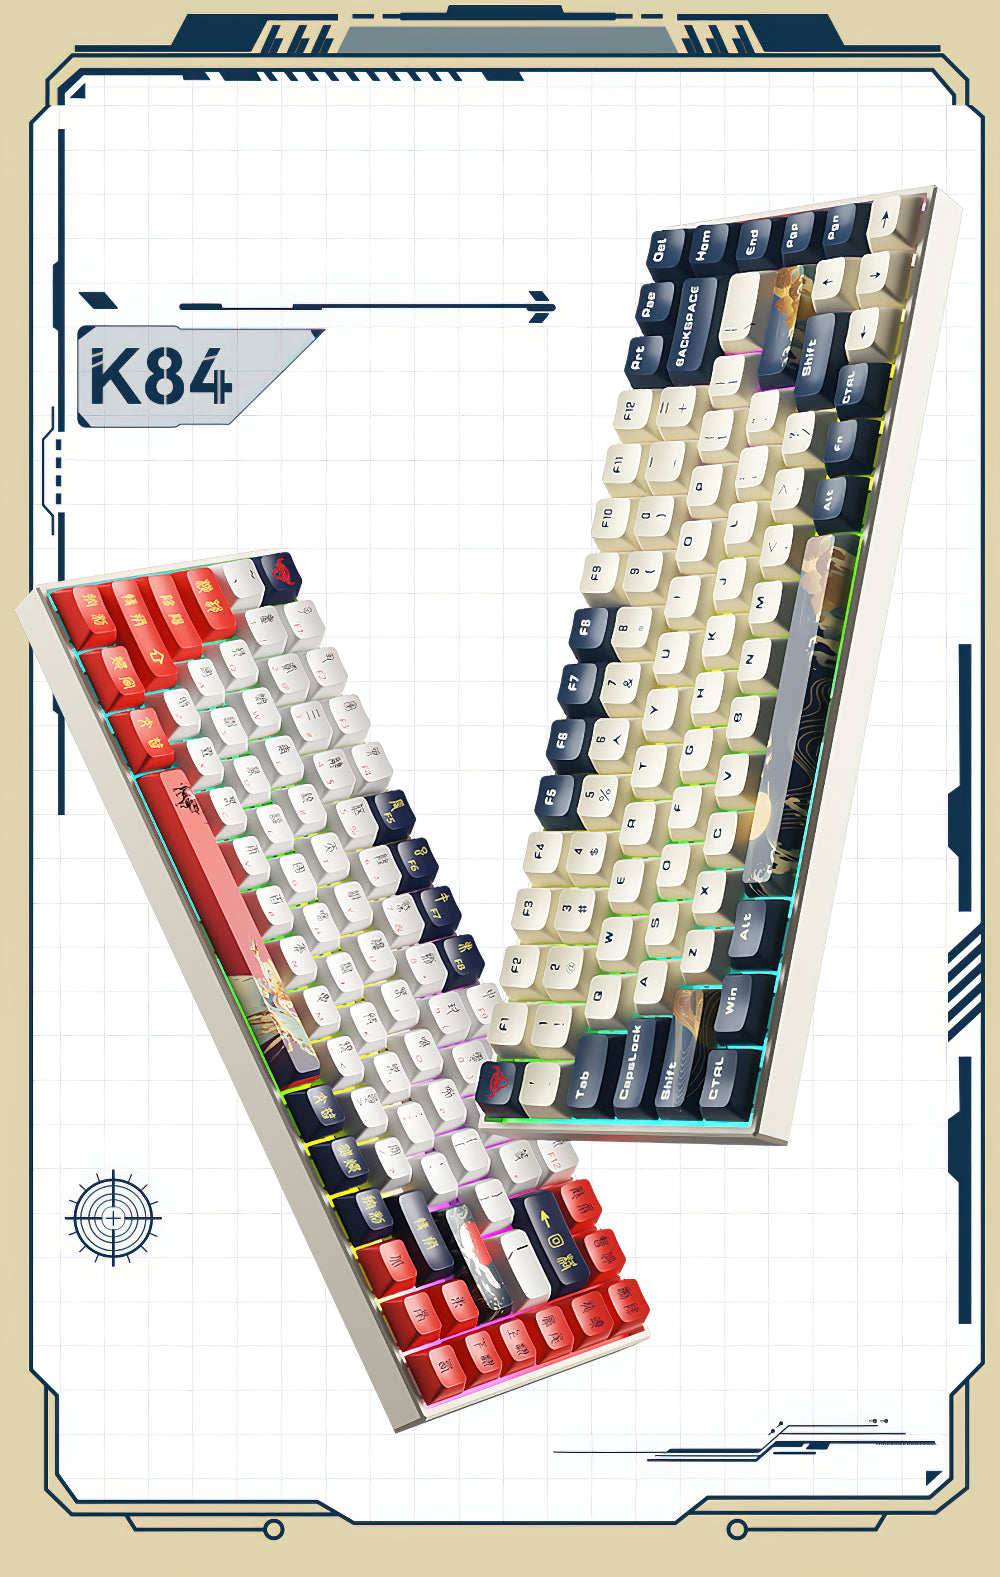 iBlancod K84 熱插拔無線 2.4G 藍牙 RGB Pbt 84 鍵機械遊戲鍵盤